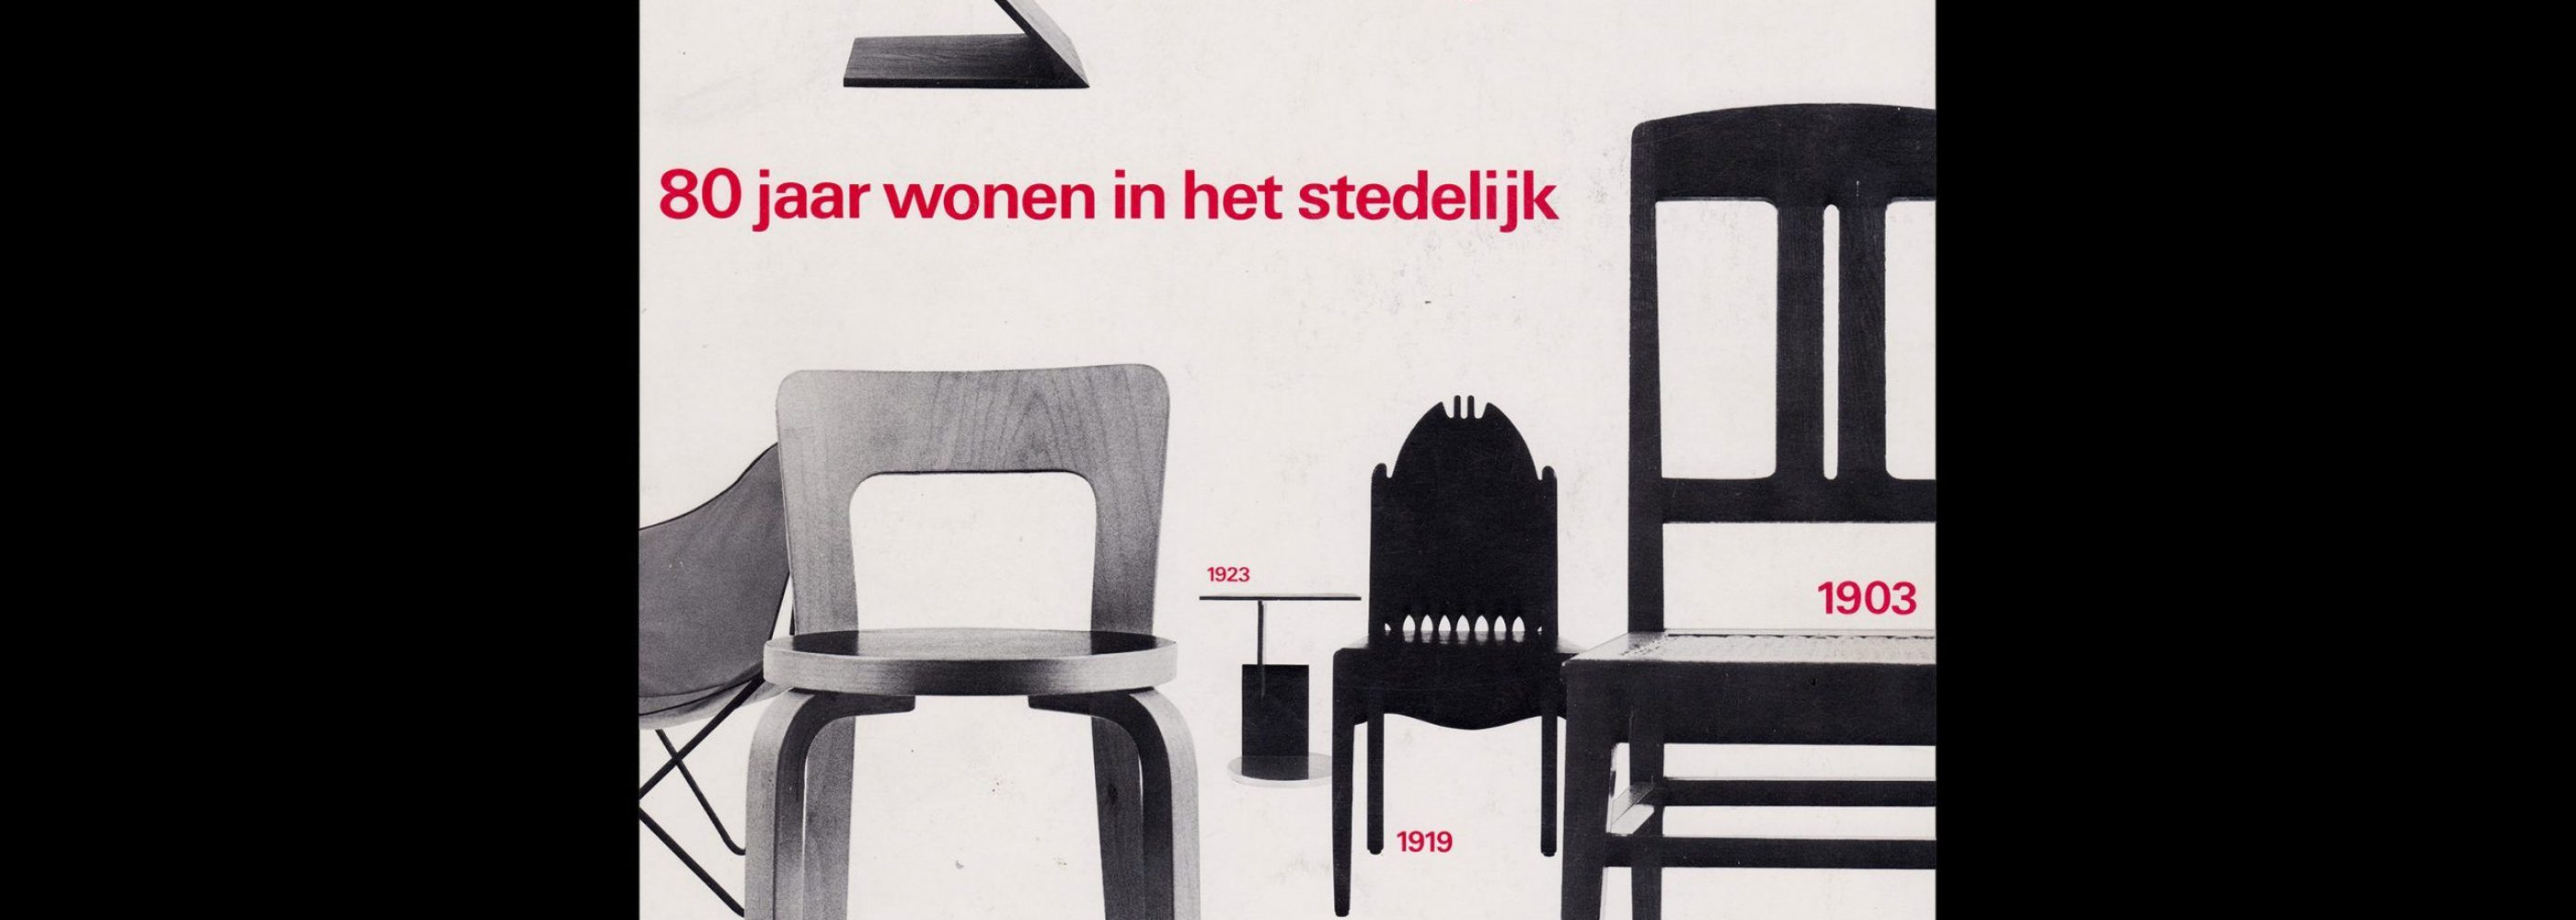 80 jaar Wohnen in het Stedelijk, Stedelijk Museum, Amsterdam, 1981 designed by Wim Crouwel and Arlette Brouwers(Total Design)